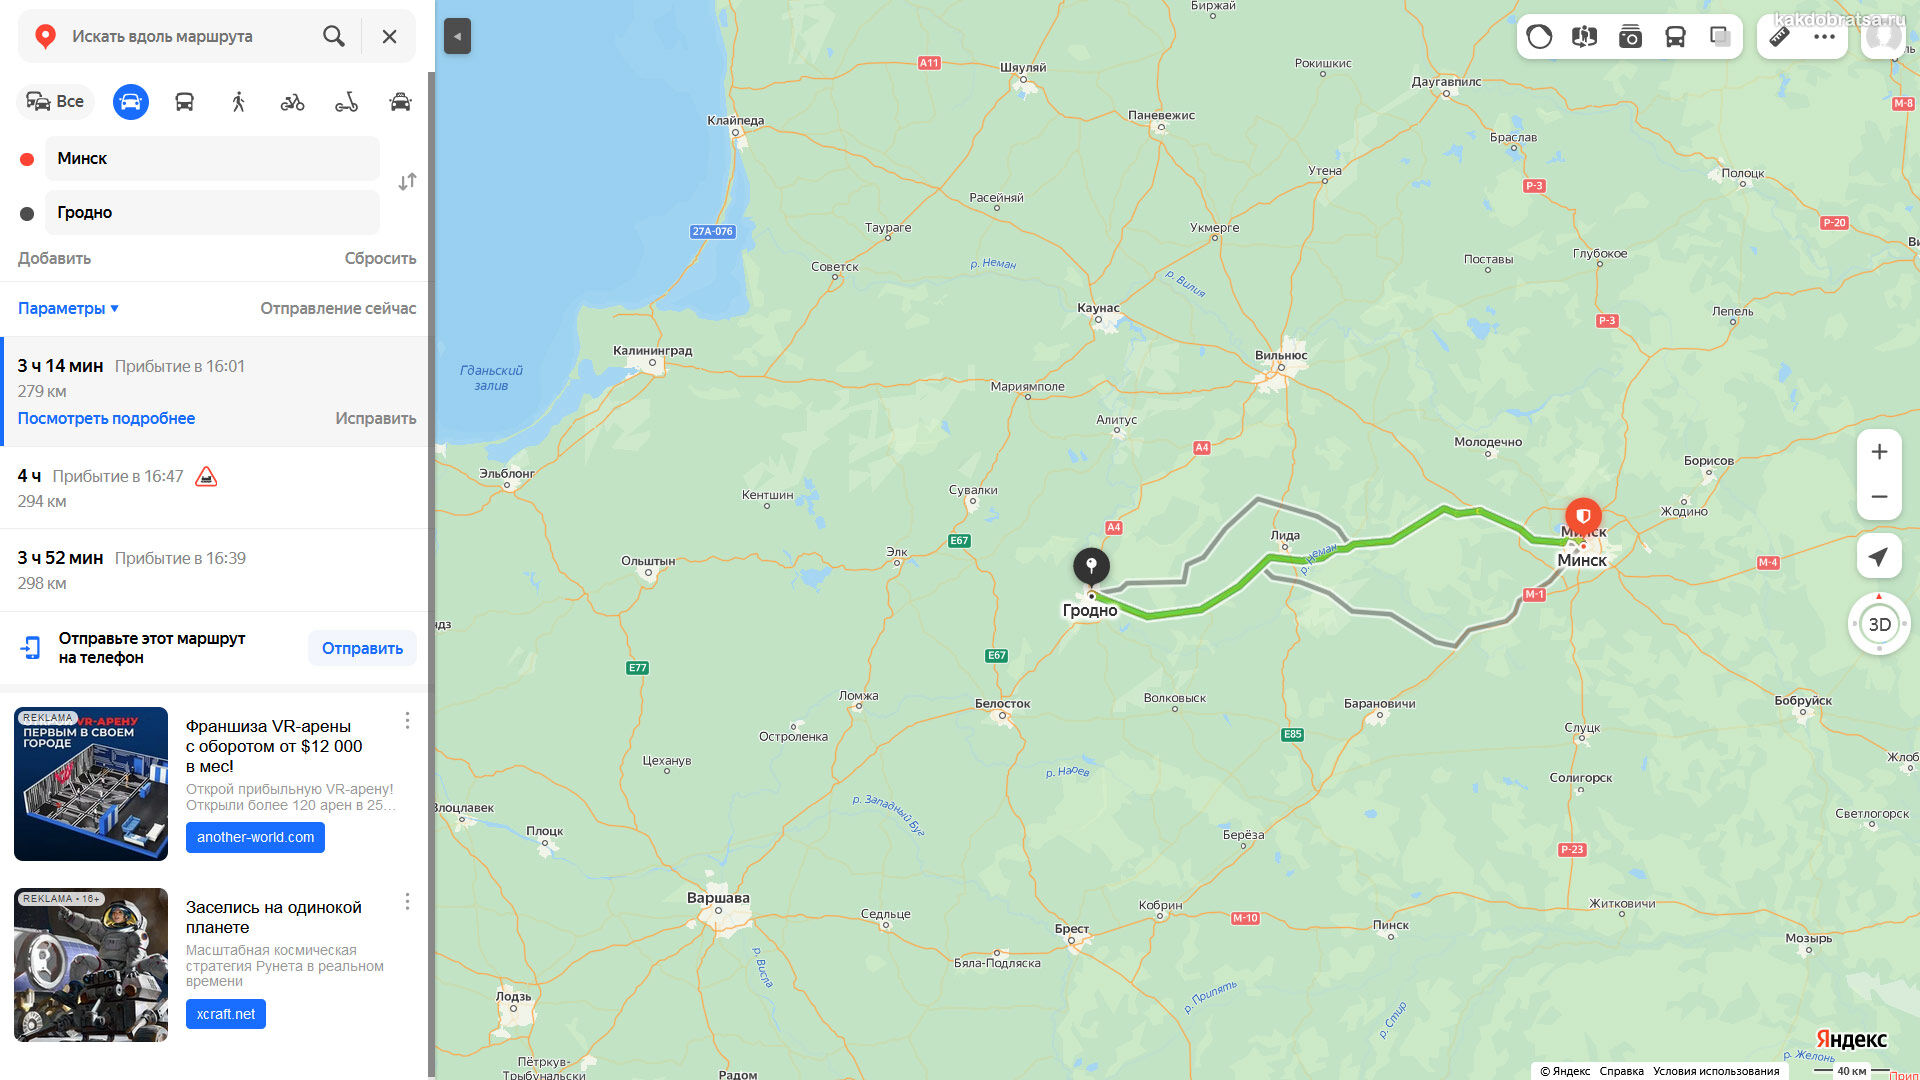 Расстояние от Минска до Гродно в км по карте